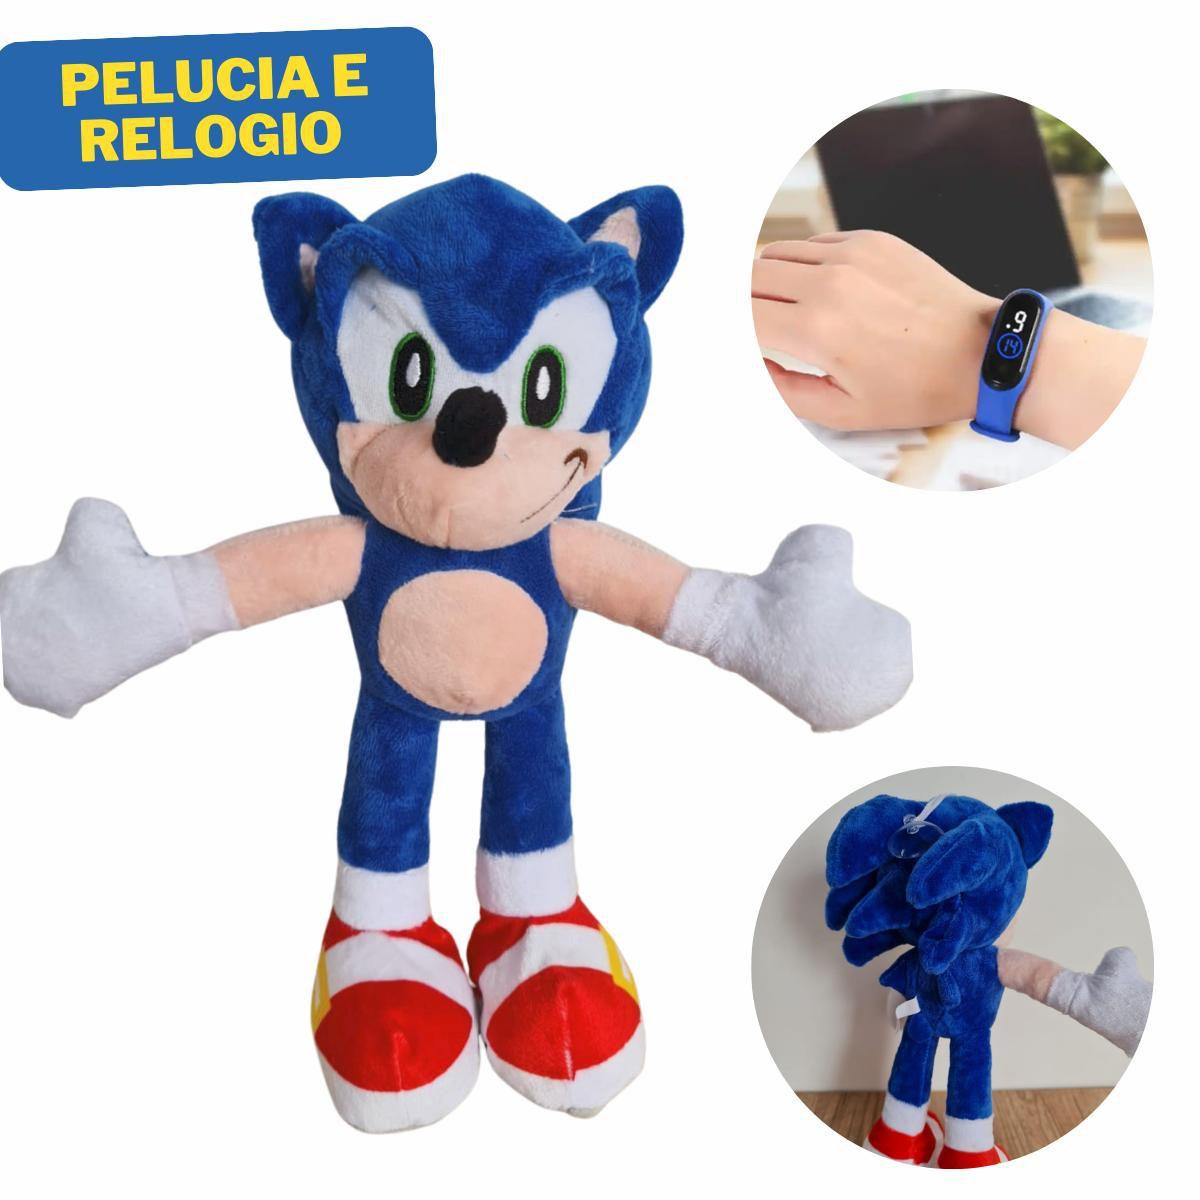 Sonic Boneco com Relógio Pelúcia Infantil, Magalu Empresas